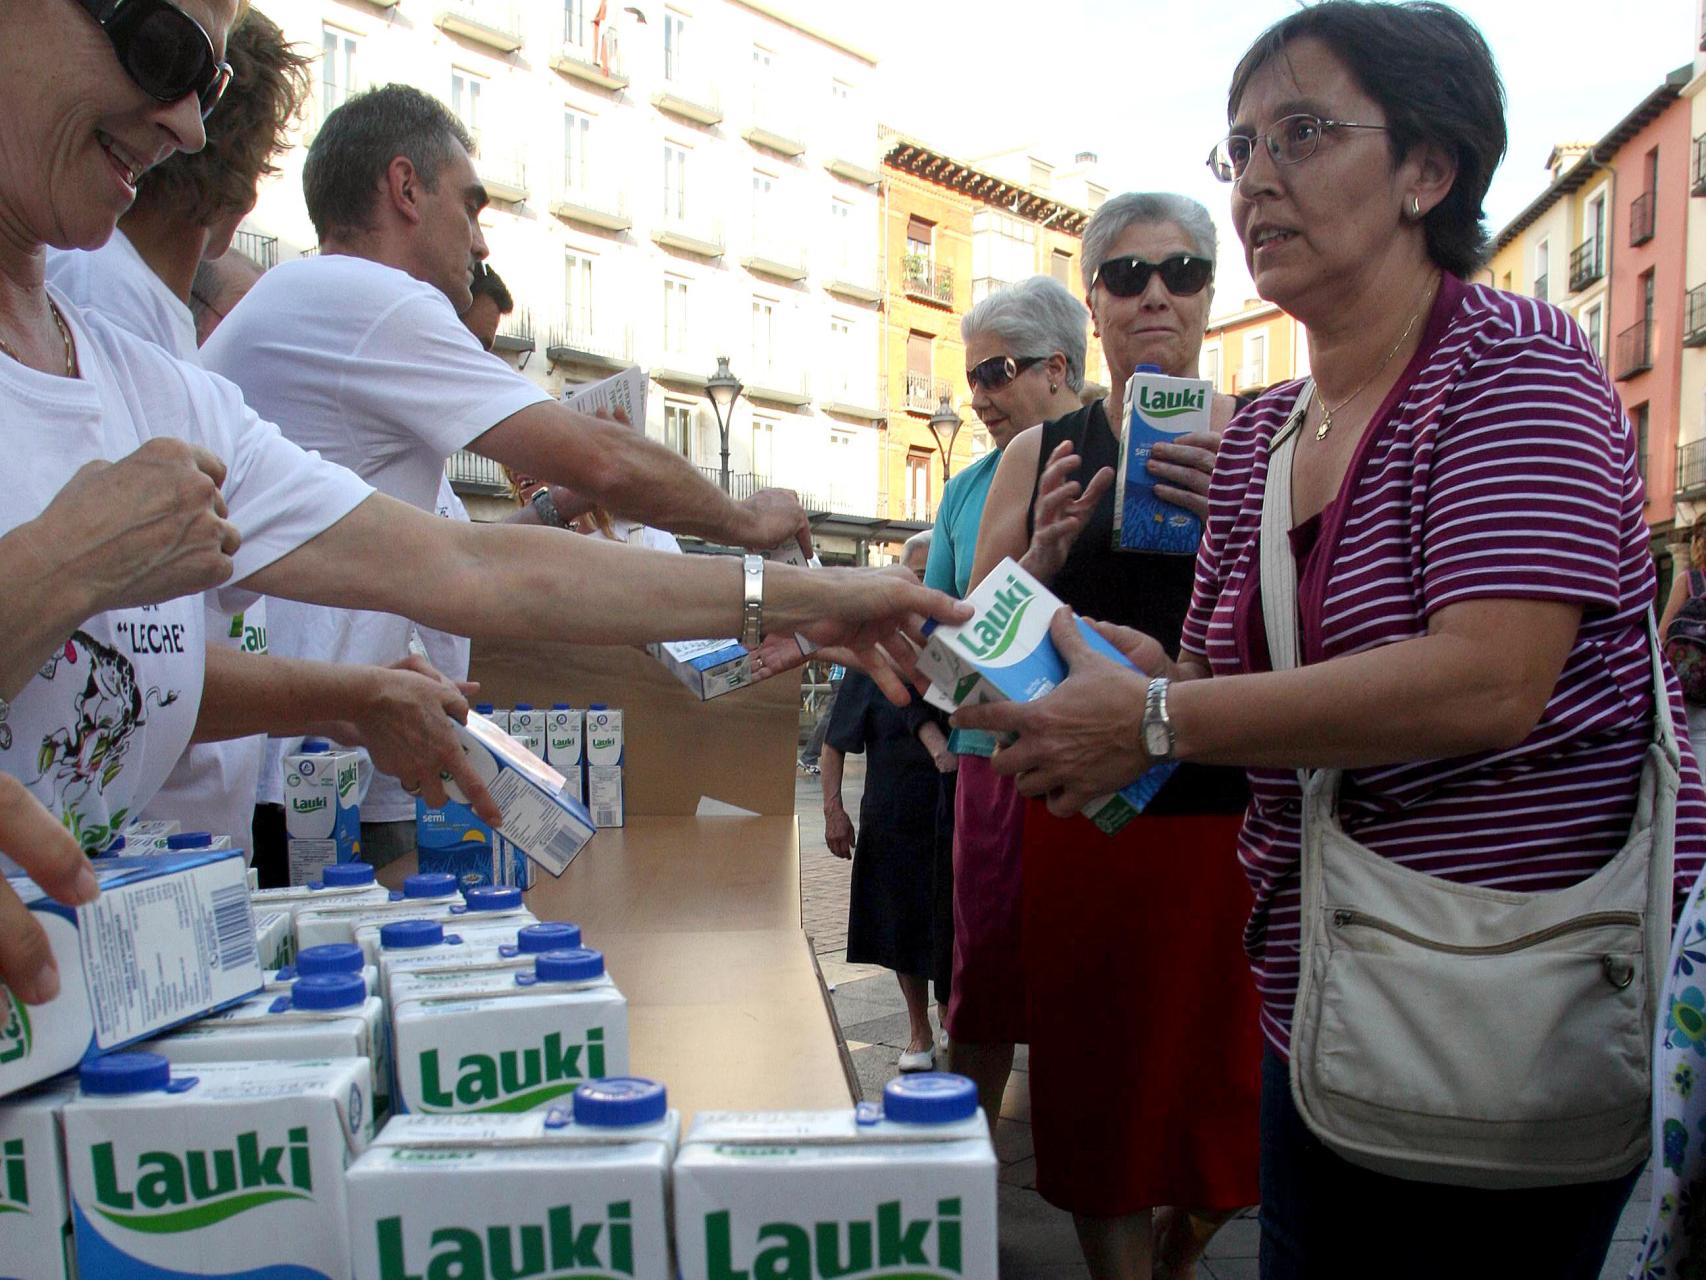 Los trabajadores de Lauki repartieron en 2012 leche a los vecinos de Valladolid para reivindicar la producción de la empresa